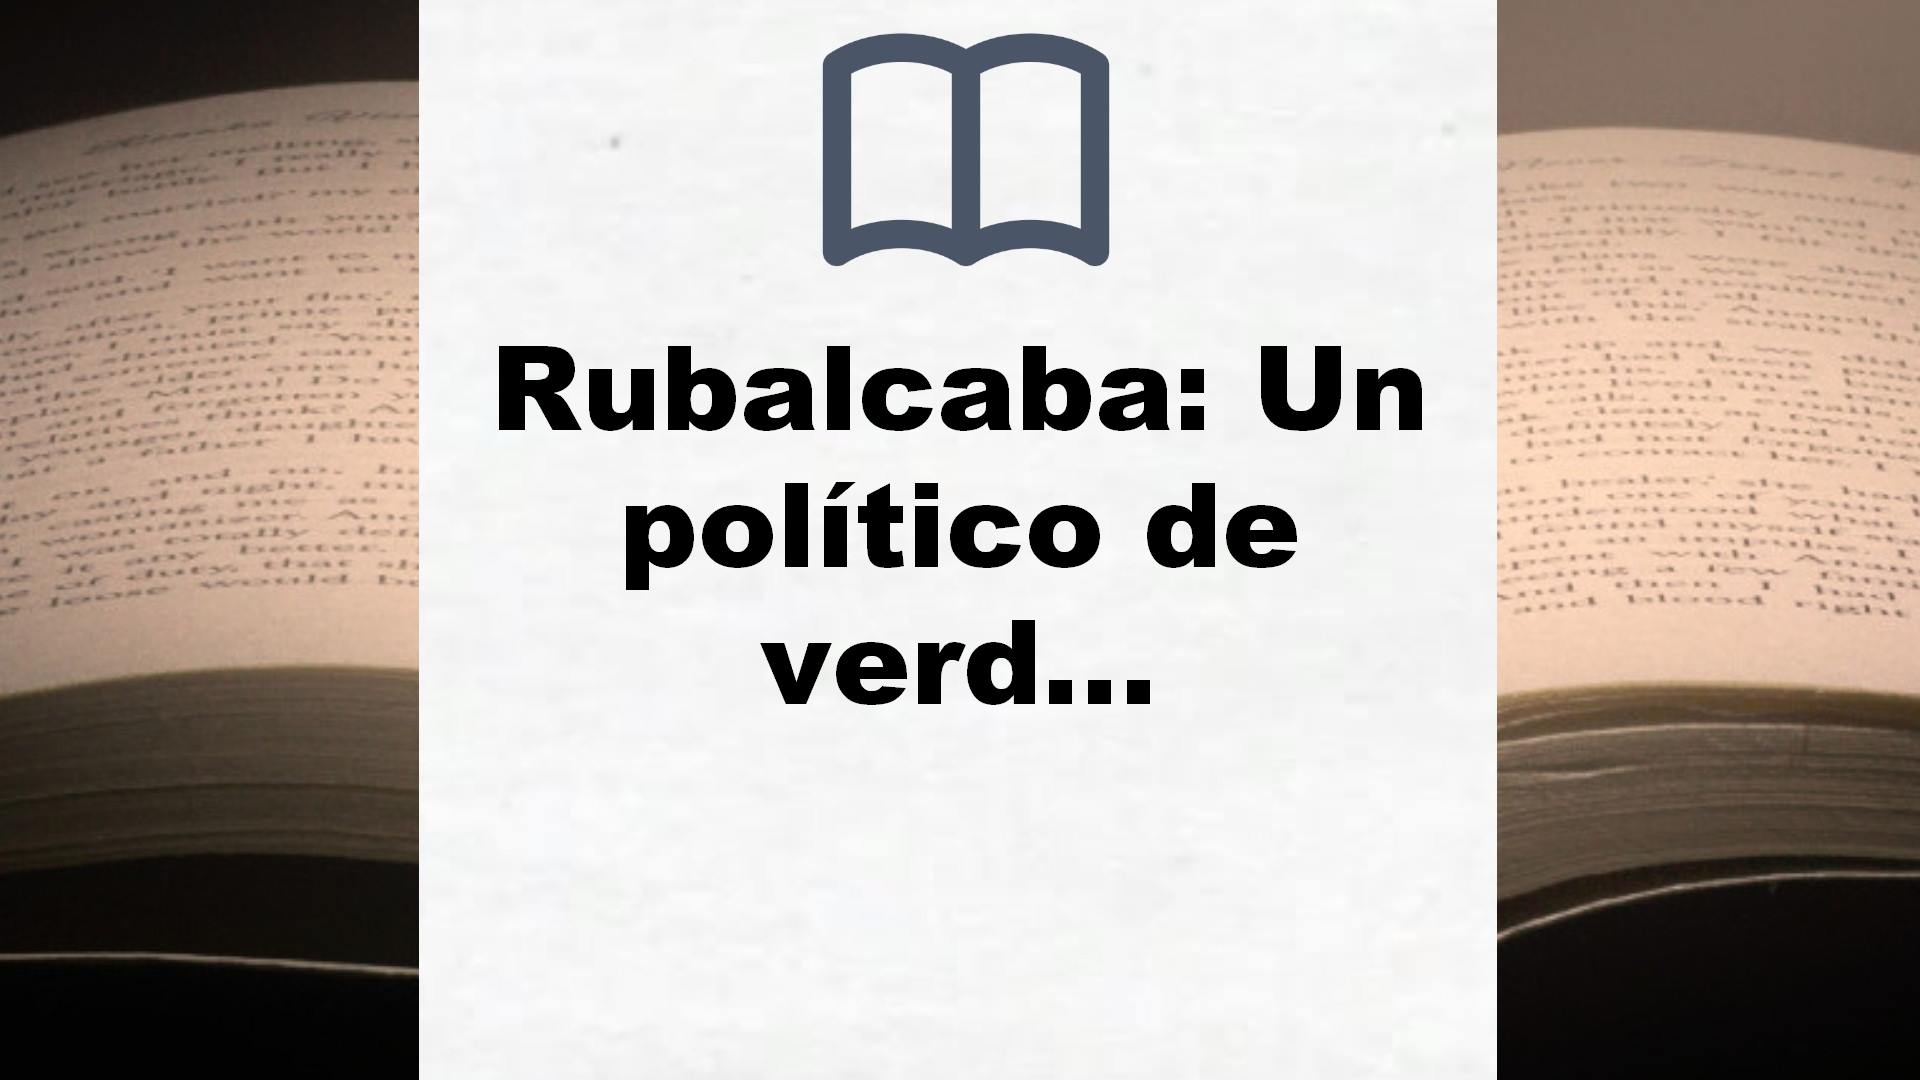 Rubalcaba: Un político de verdad (Obras diversas) – Reseña del libro